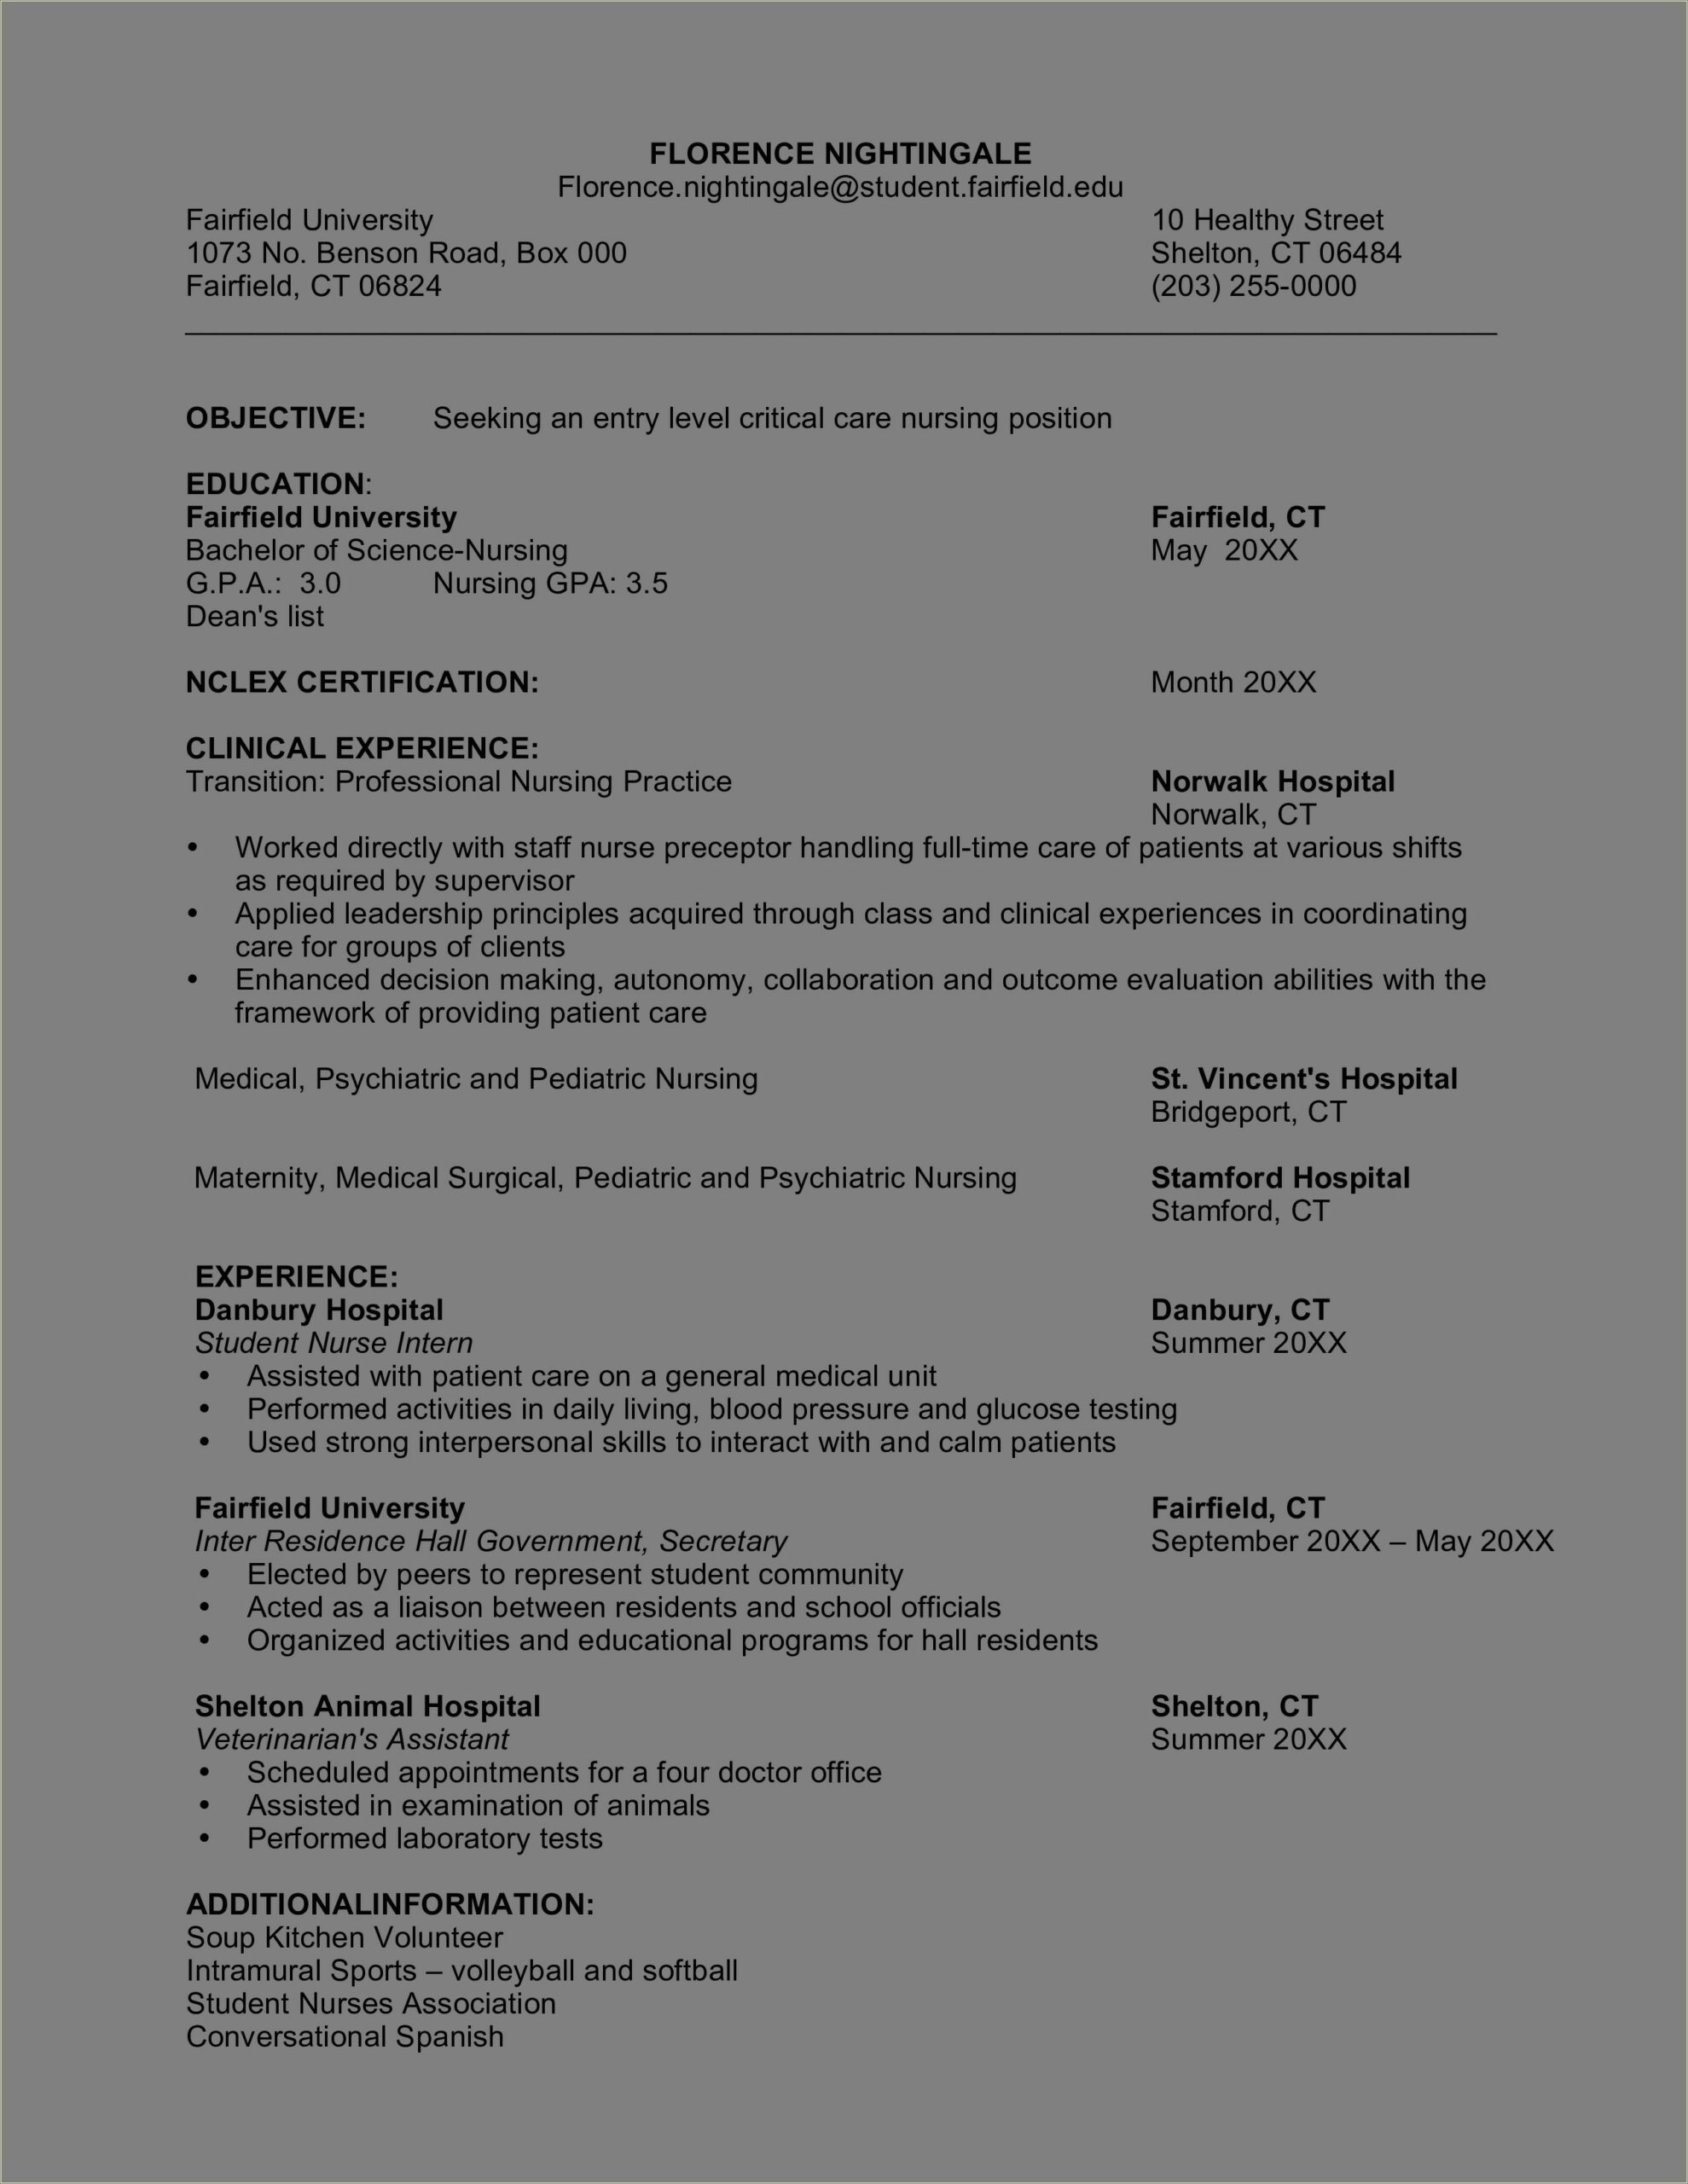 Critical Care Nurse Job Description Resume